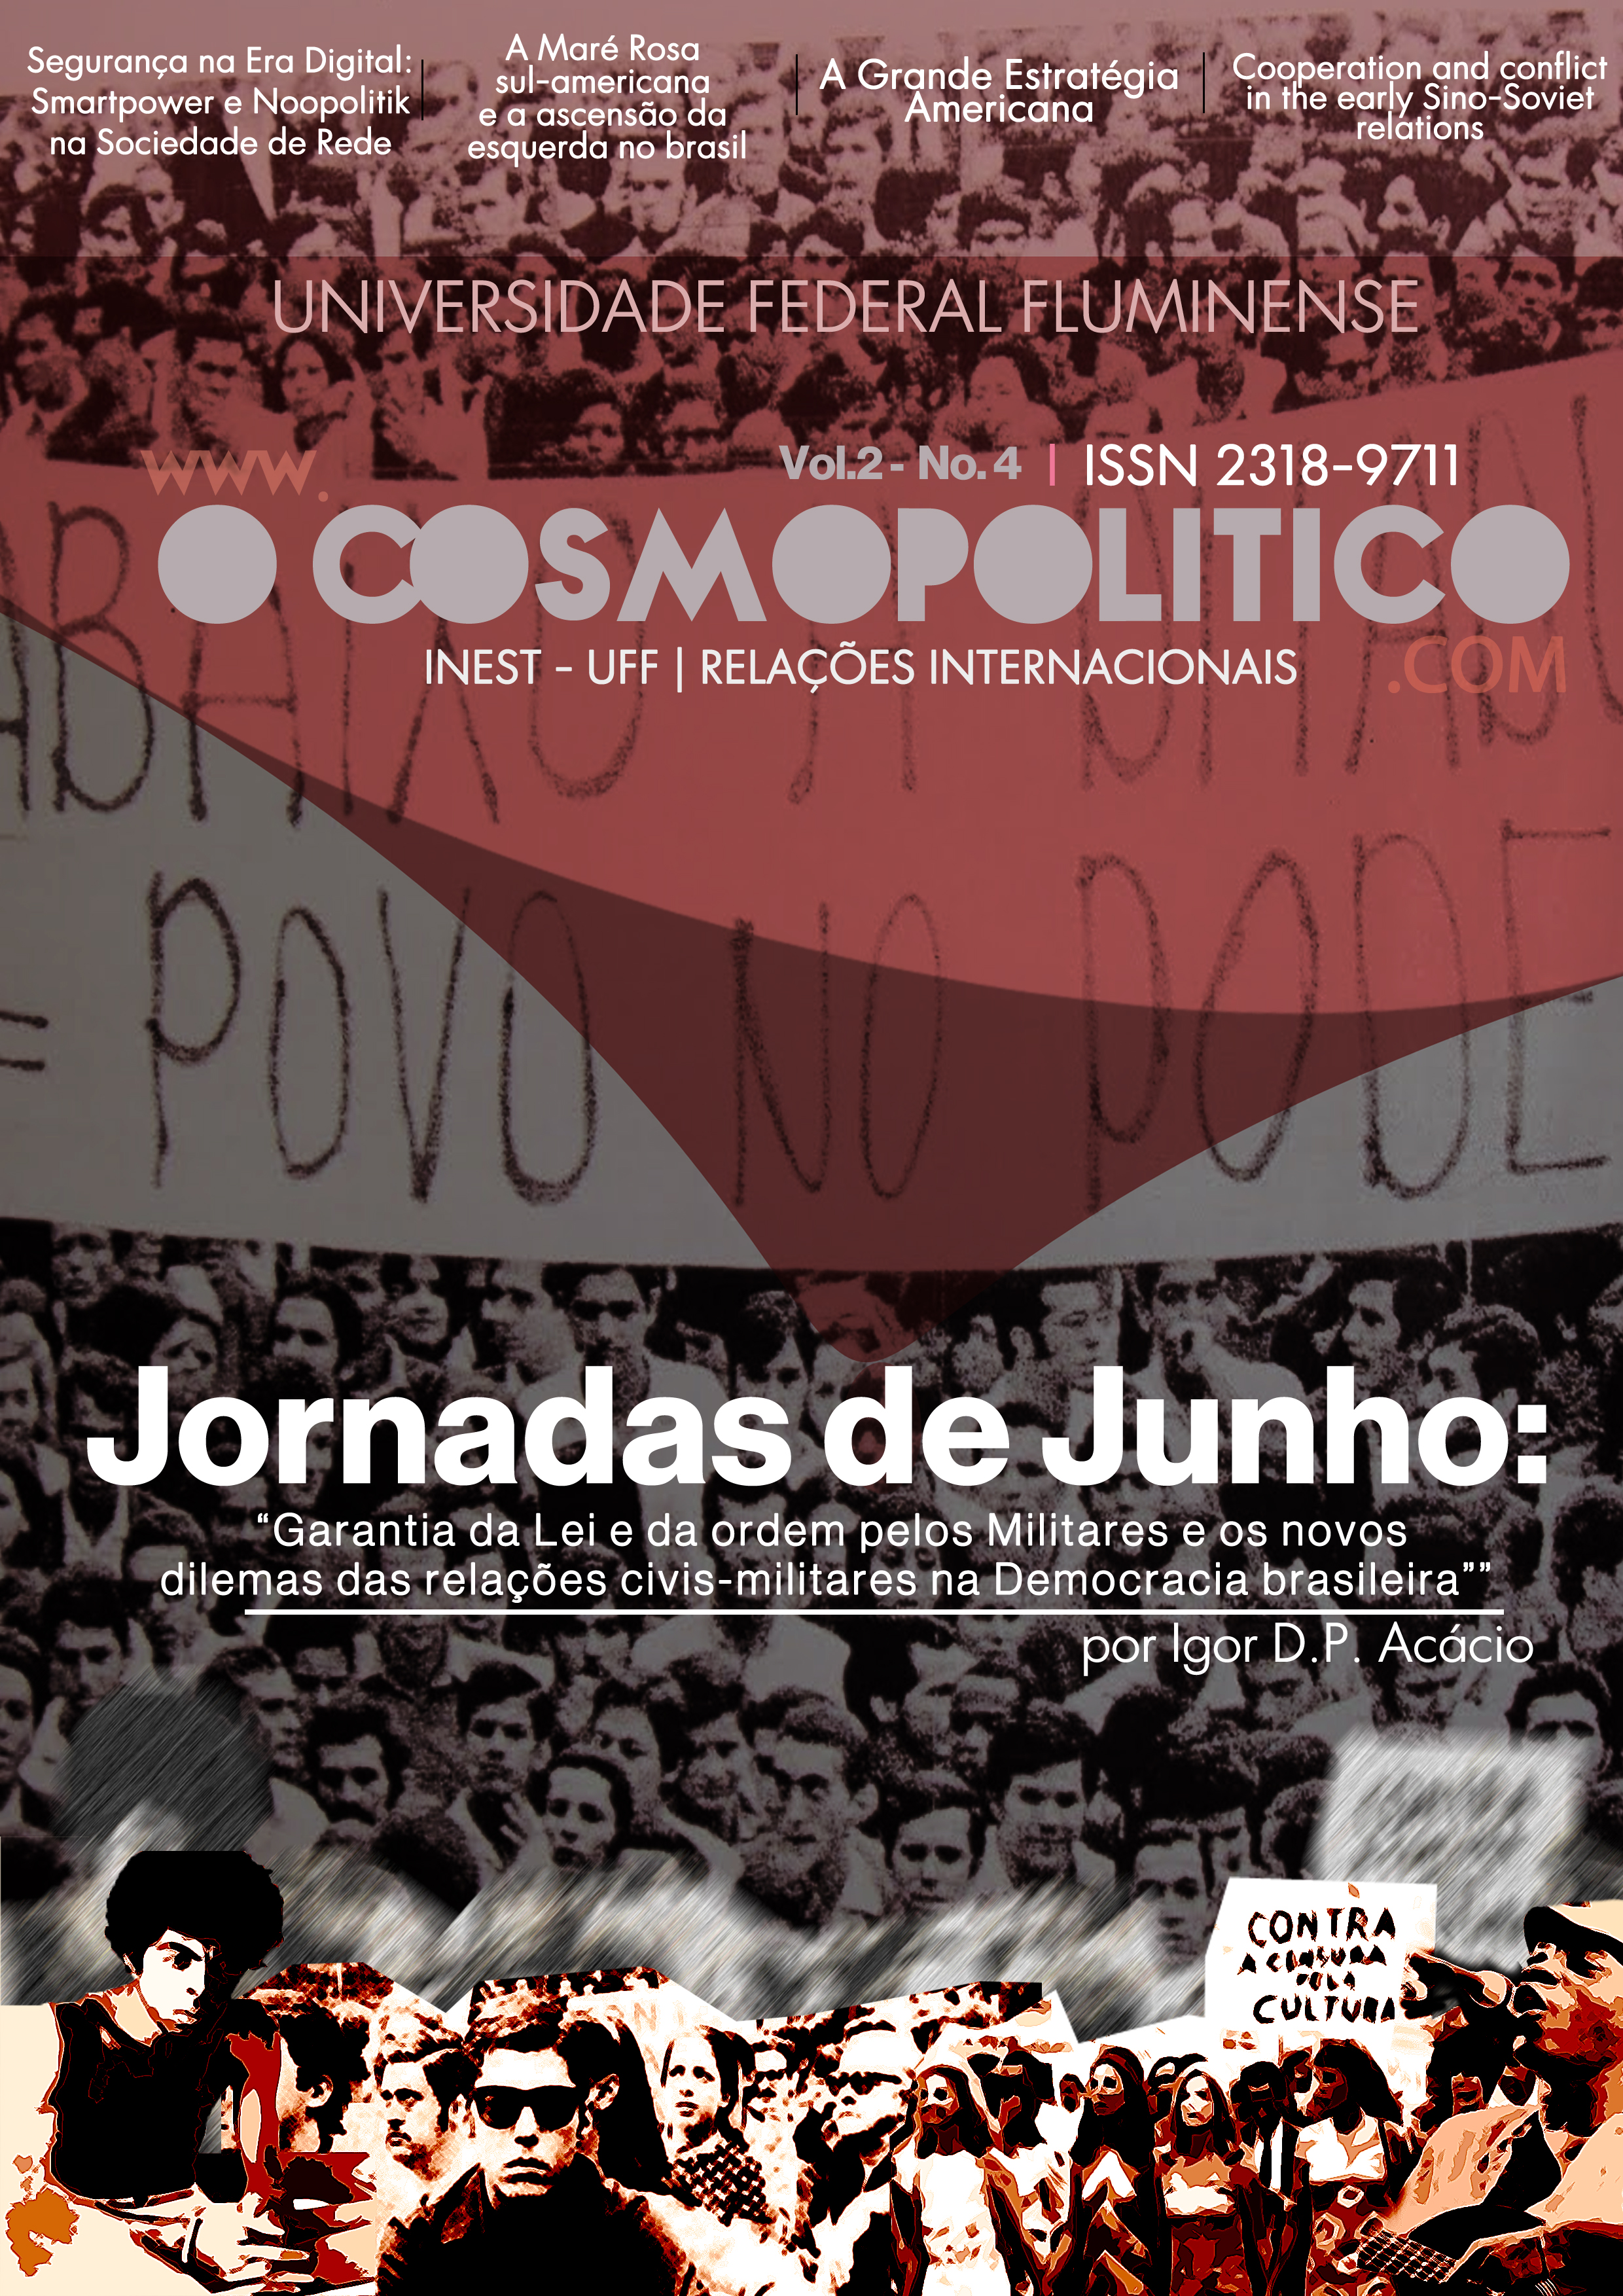 Imagem de capa: Imagens de protestos das Jornadas de Junho onde pode ser lido em cartazes: "Abaixo a ditadura e povo no poder" e "Contra a censura pela cultura".